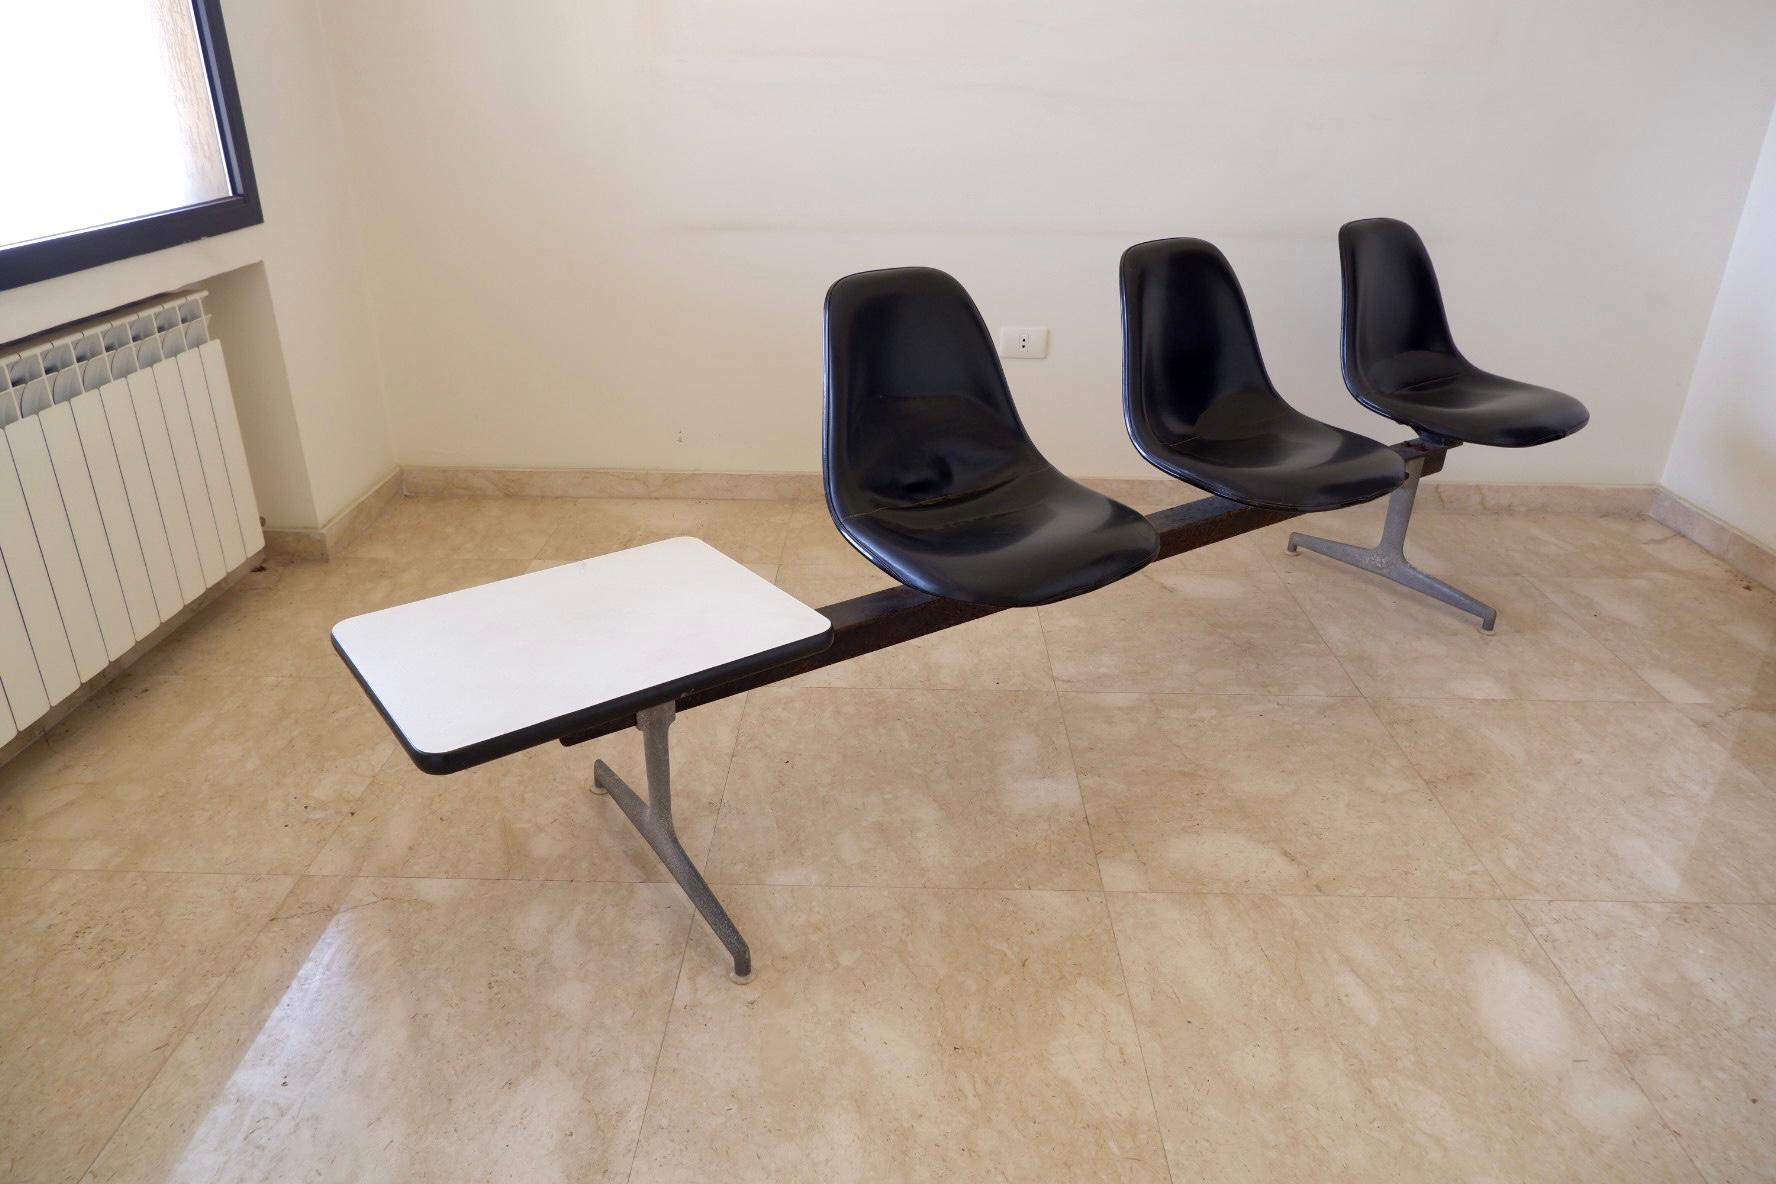 Tandem de sièges iconiques à trois coques par Charles & Ray Eames, coques en fibre de verre noire sur une base en aluminium avec une table d'appoint blanche attachée, étiquetée sur les fonds.